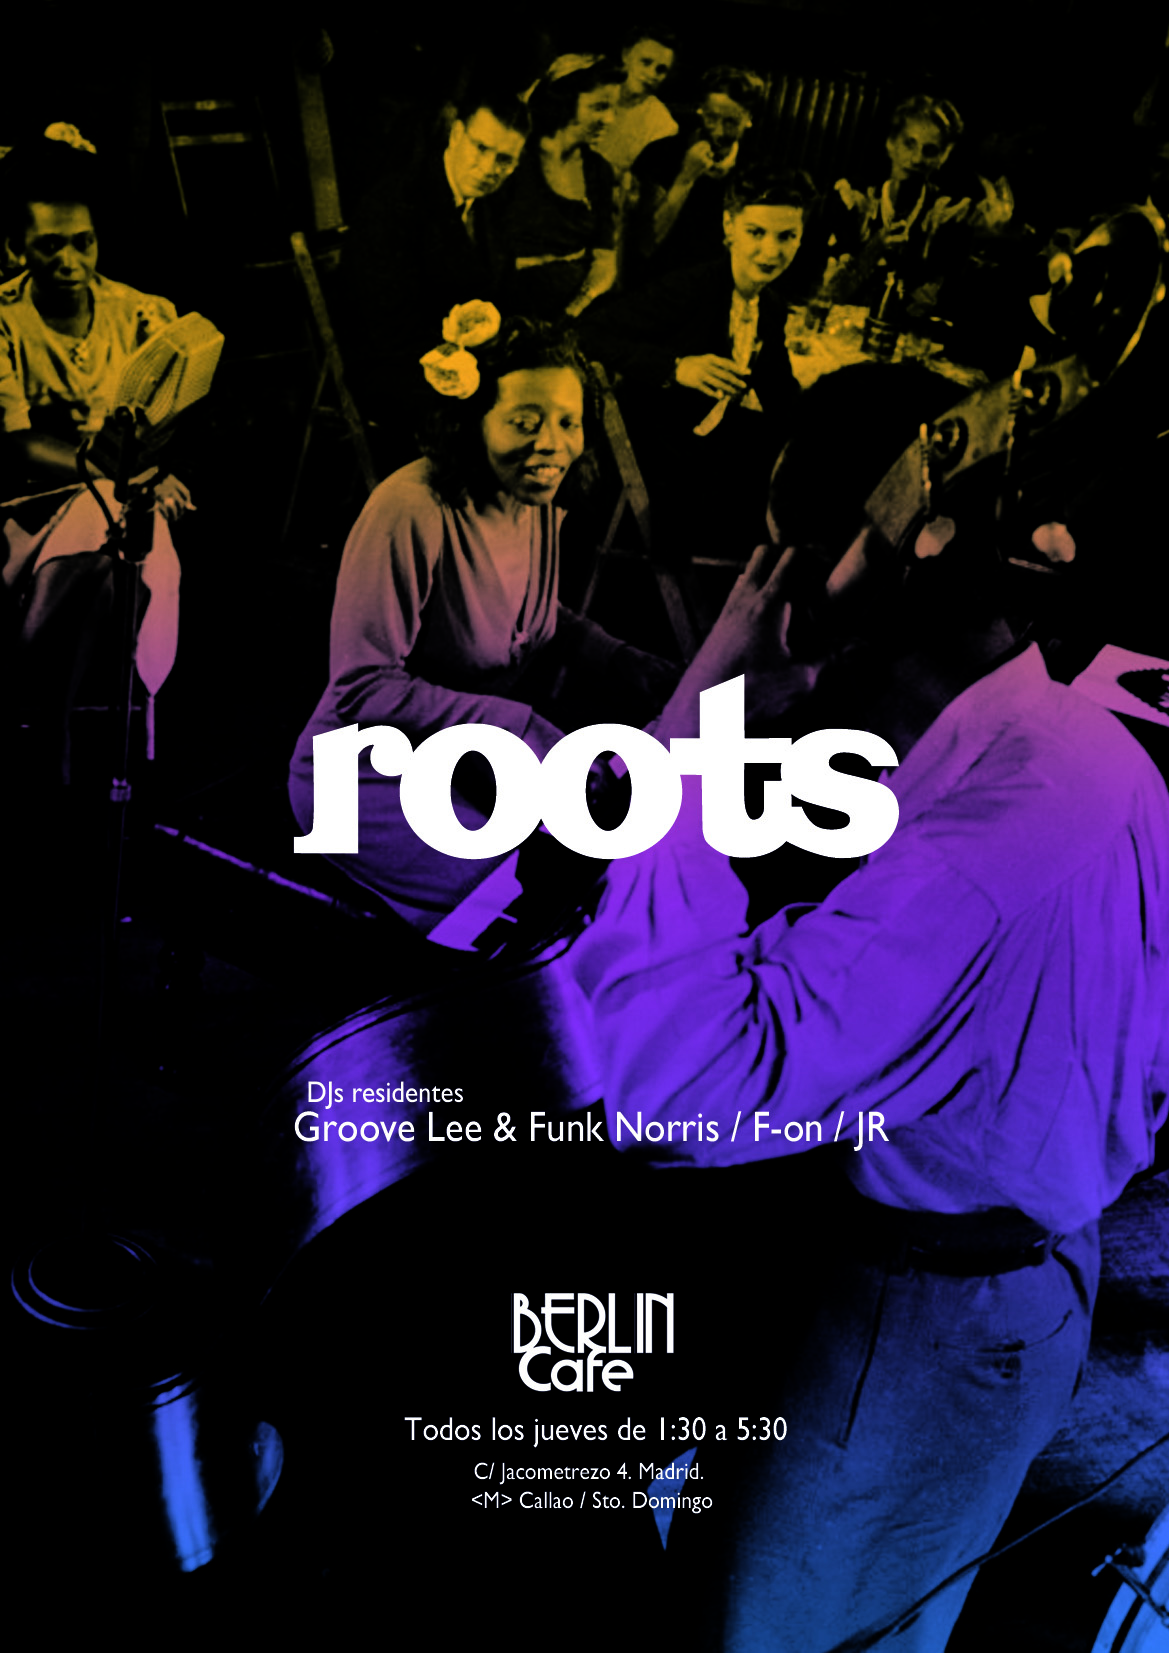 Diseño de identidad y cartelería para Roots@cafeberlin